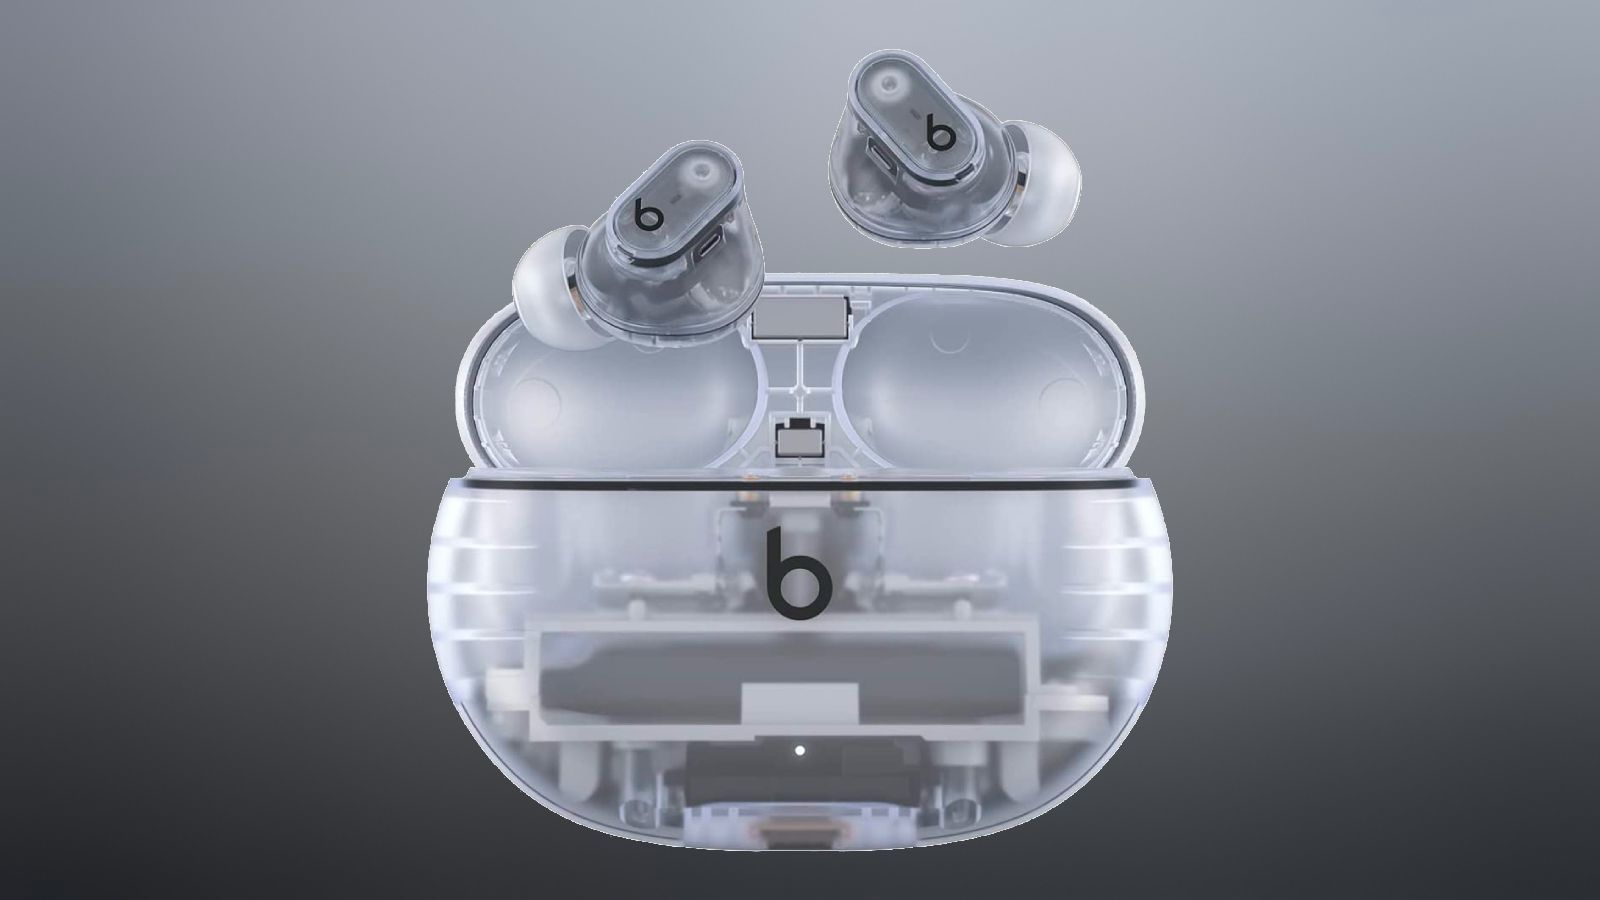 Şaşırtıcı! Şeffaf Beats Studio Buds Plus Kulaklıkların Fiyatı Ortaya Çıktı